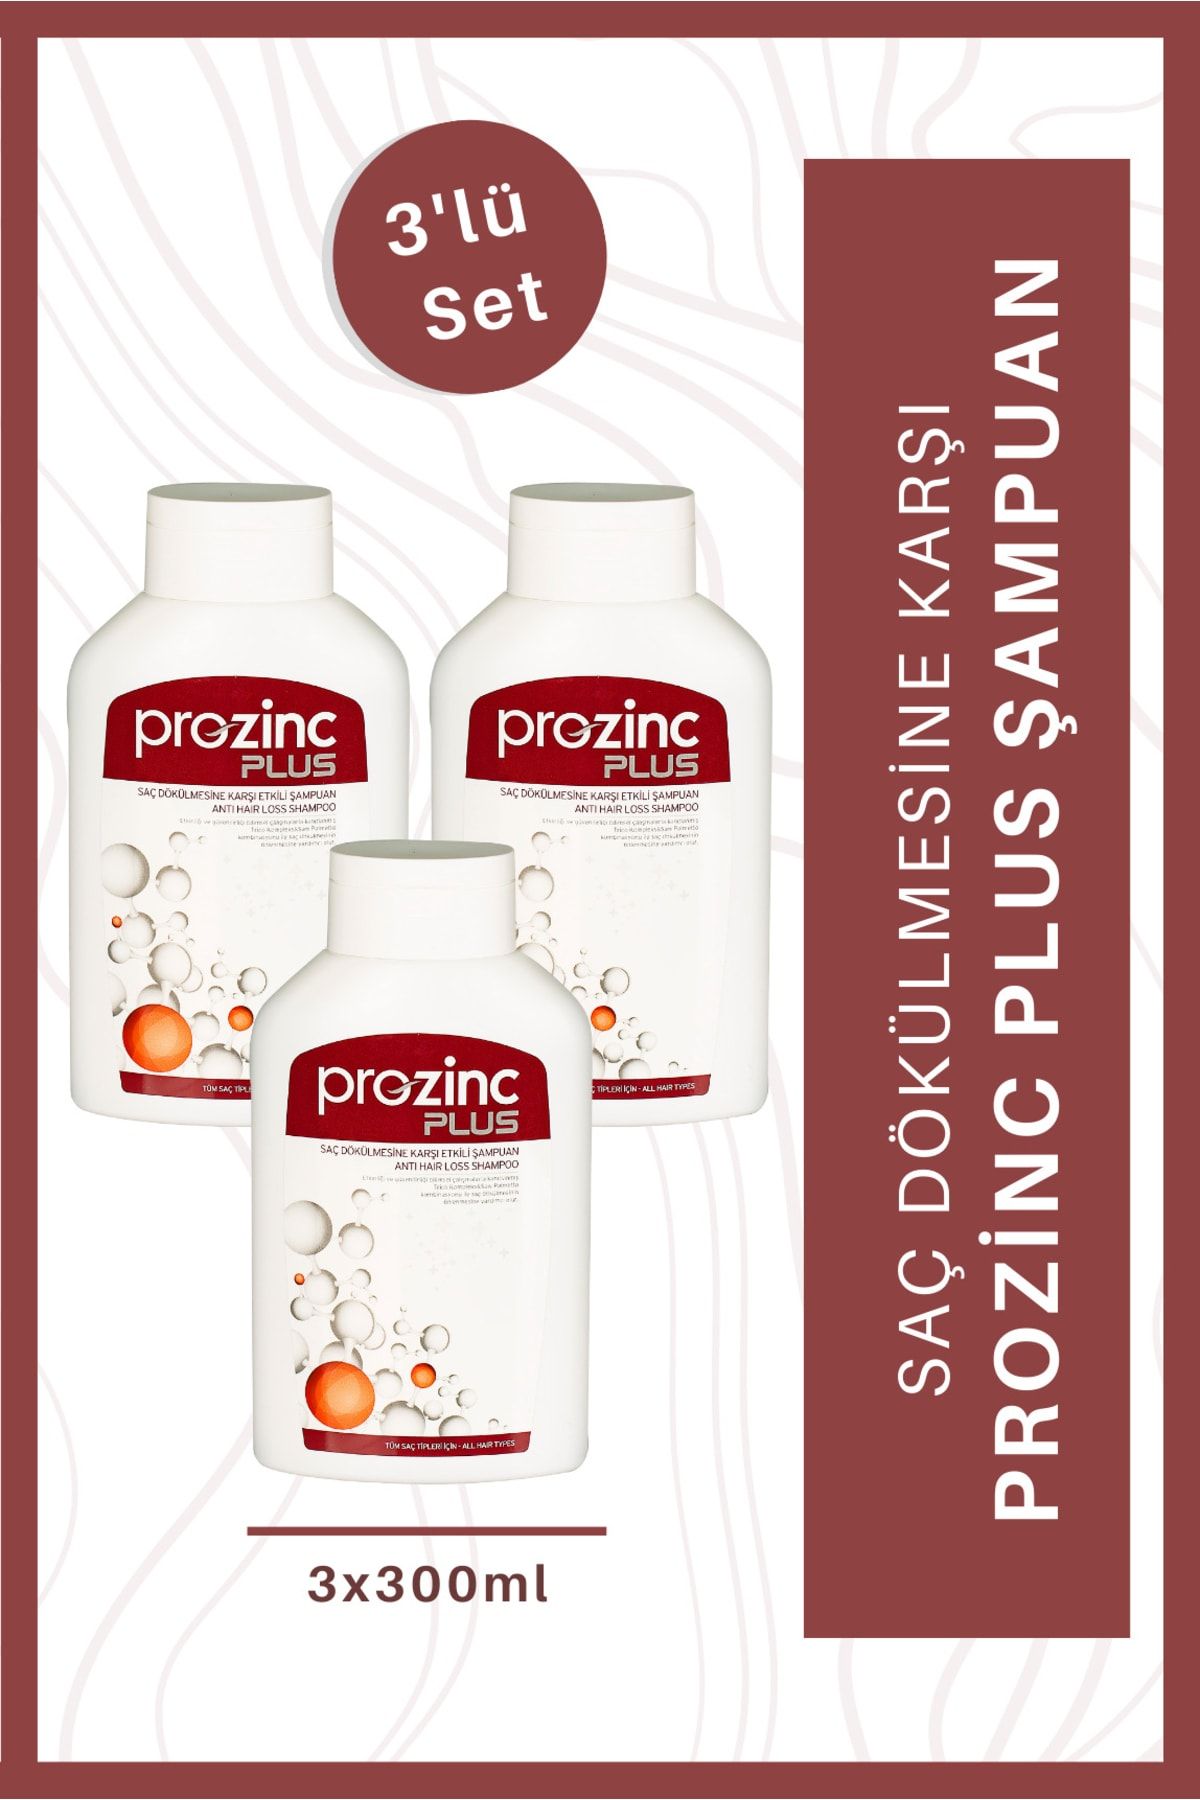 Prozinc Plus Saç Dökülmesine Karşı Etkili Şampuan 3 Al 2 Öde